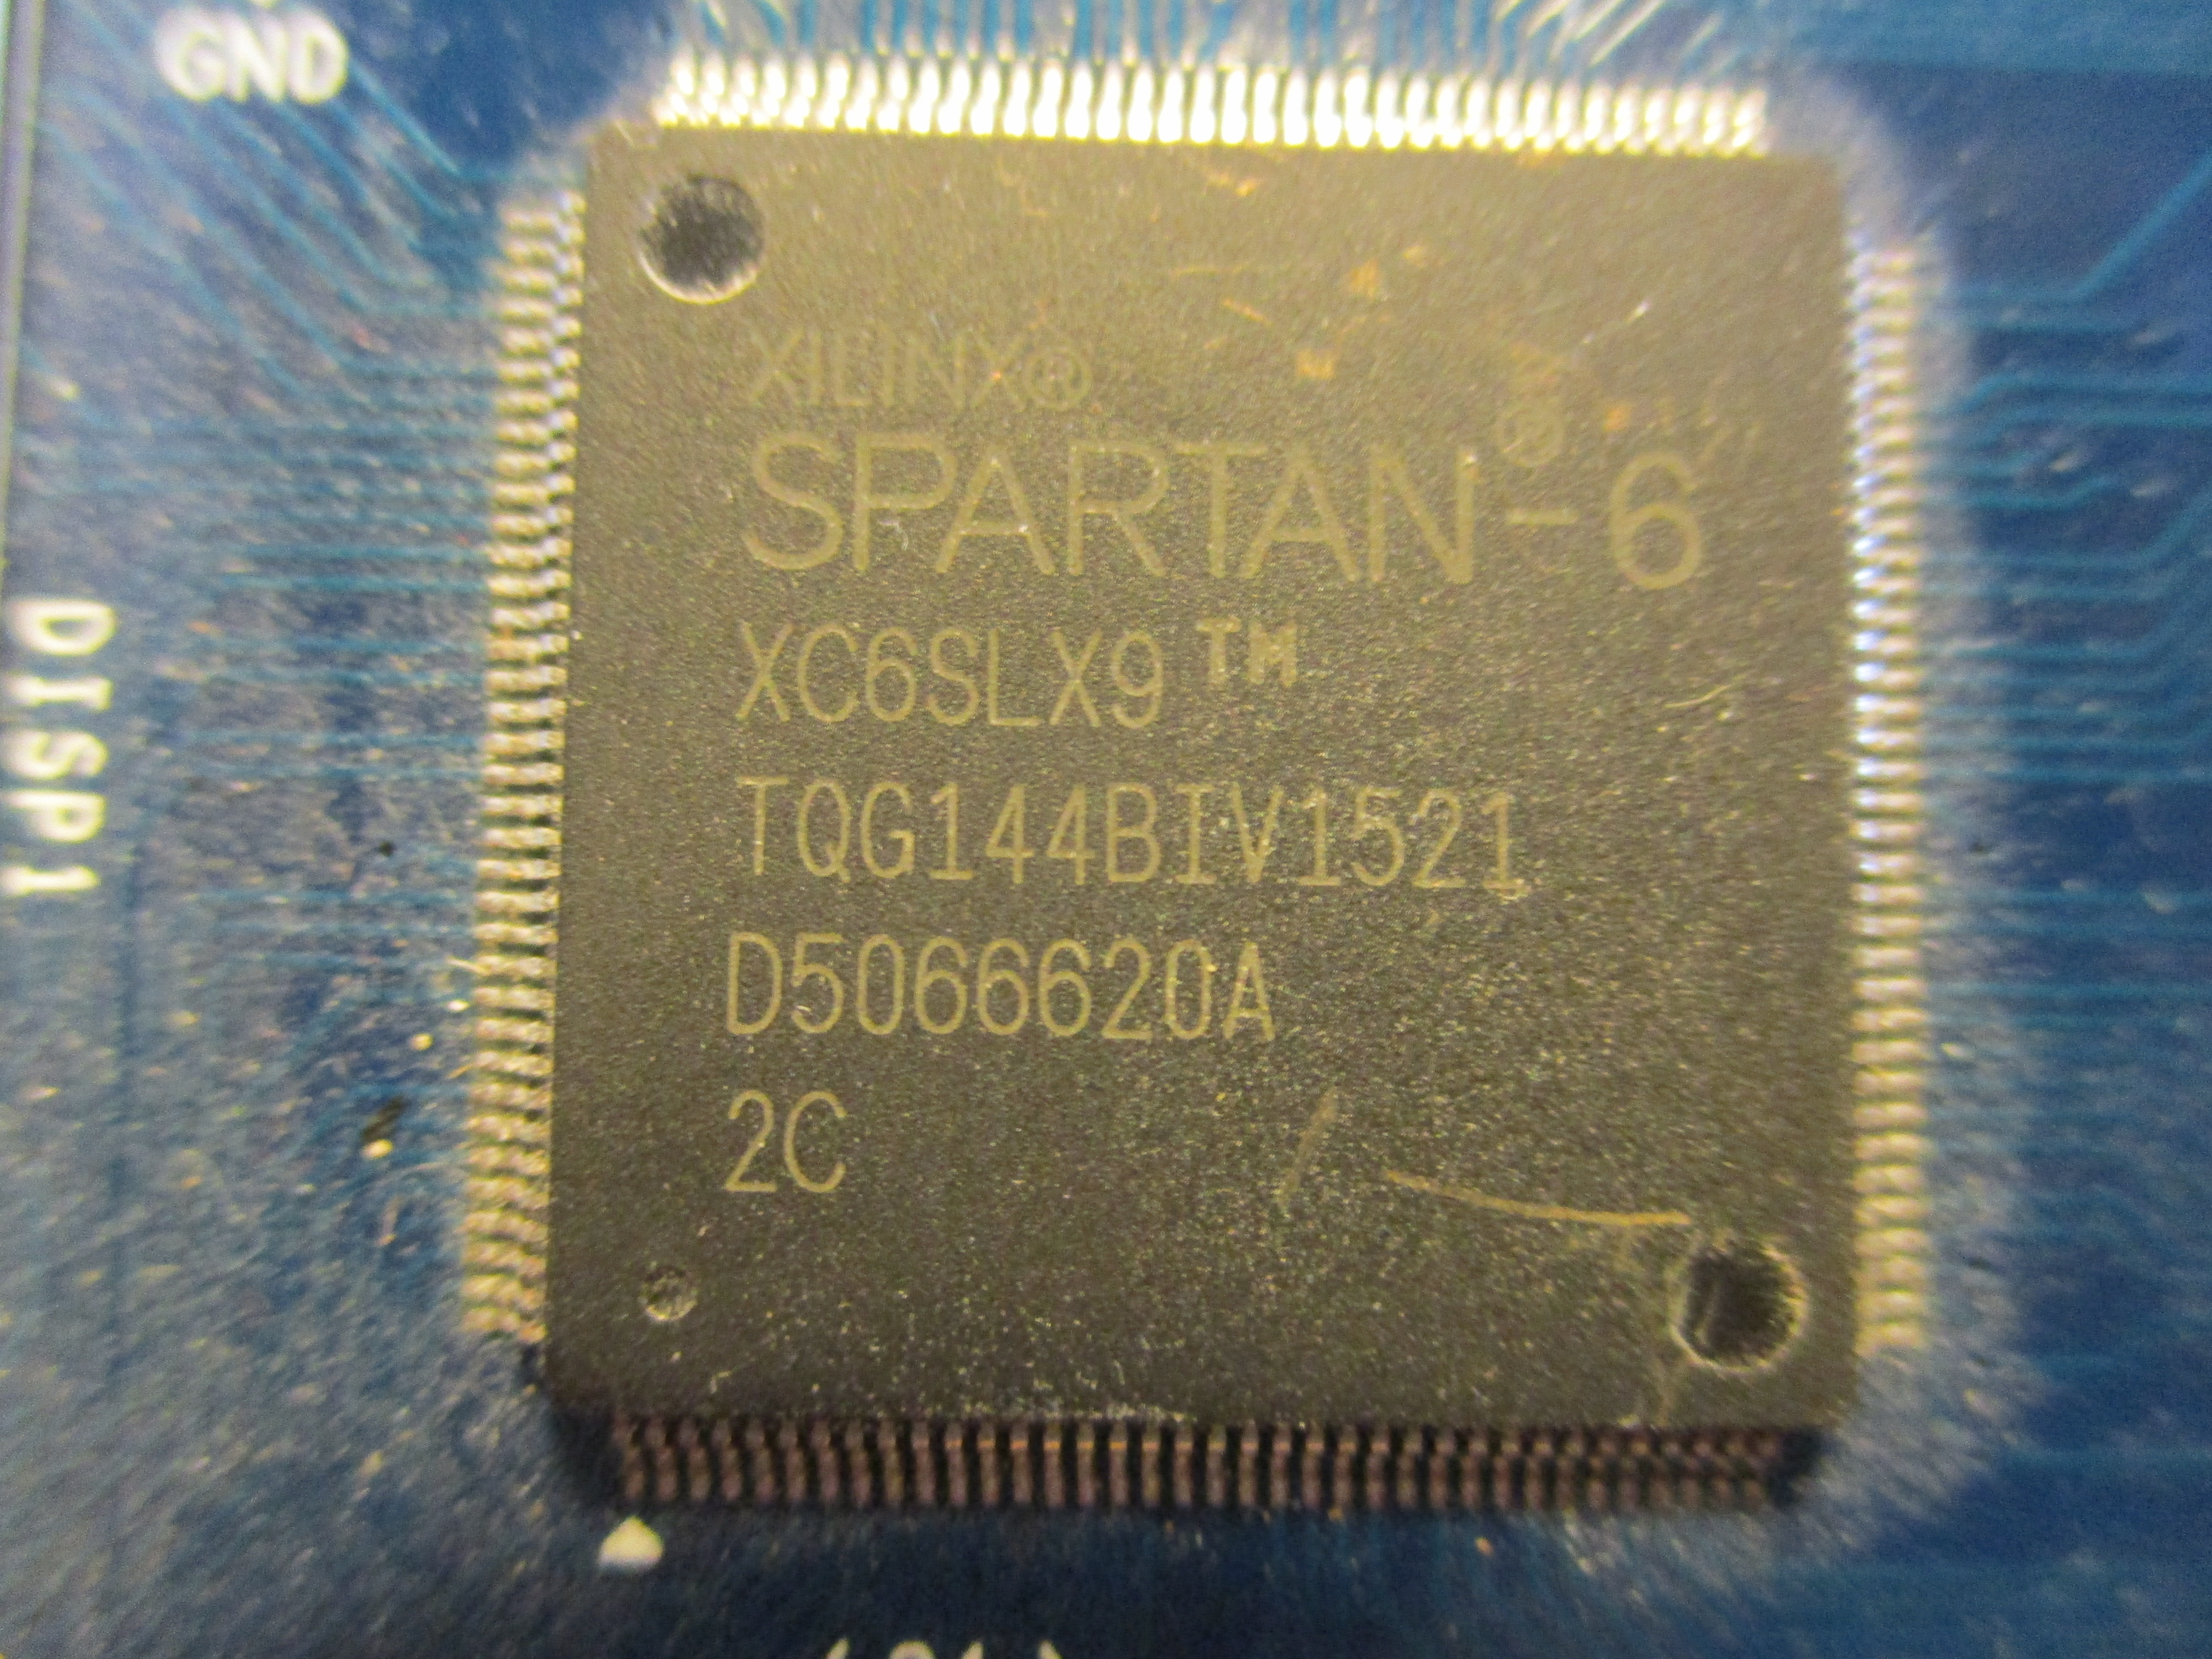 An older but still popular Xilinx Spartan-6 FPGA